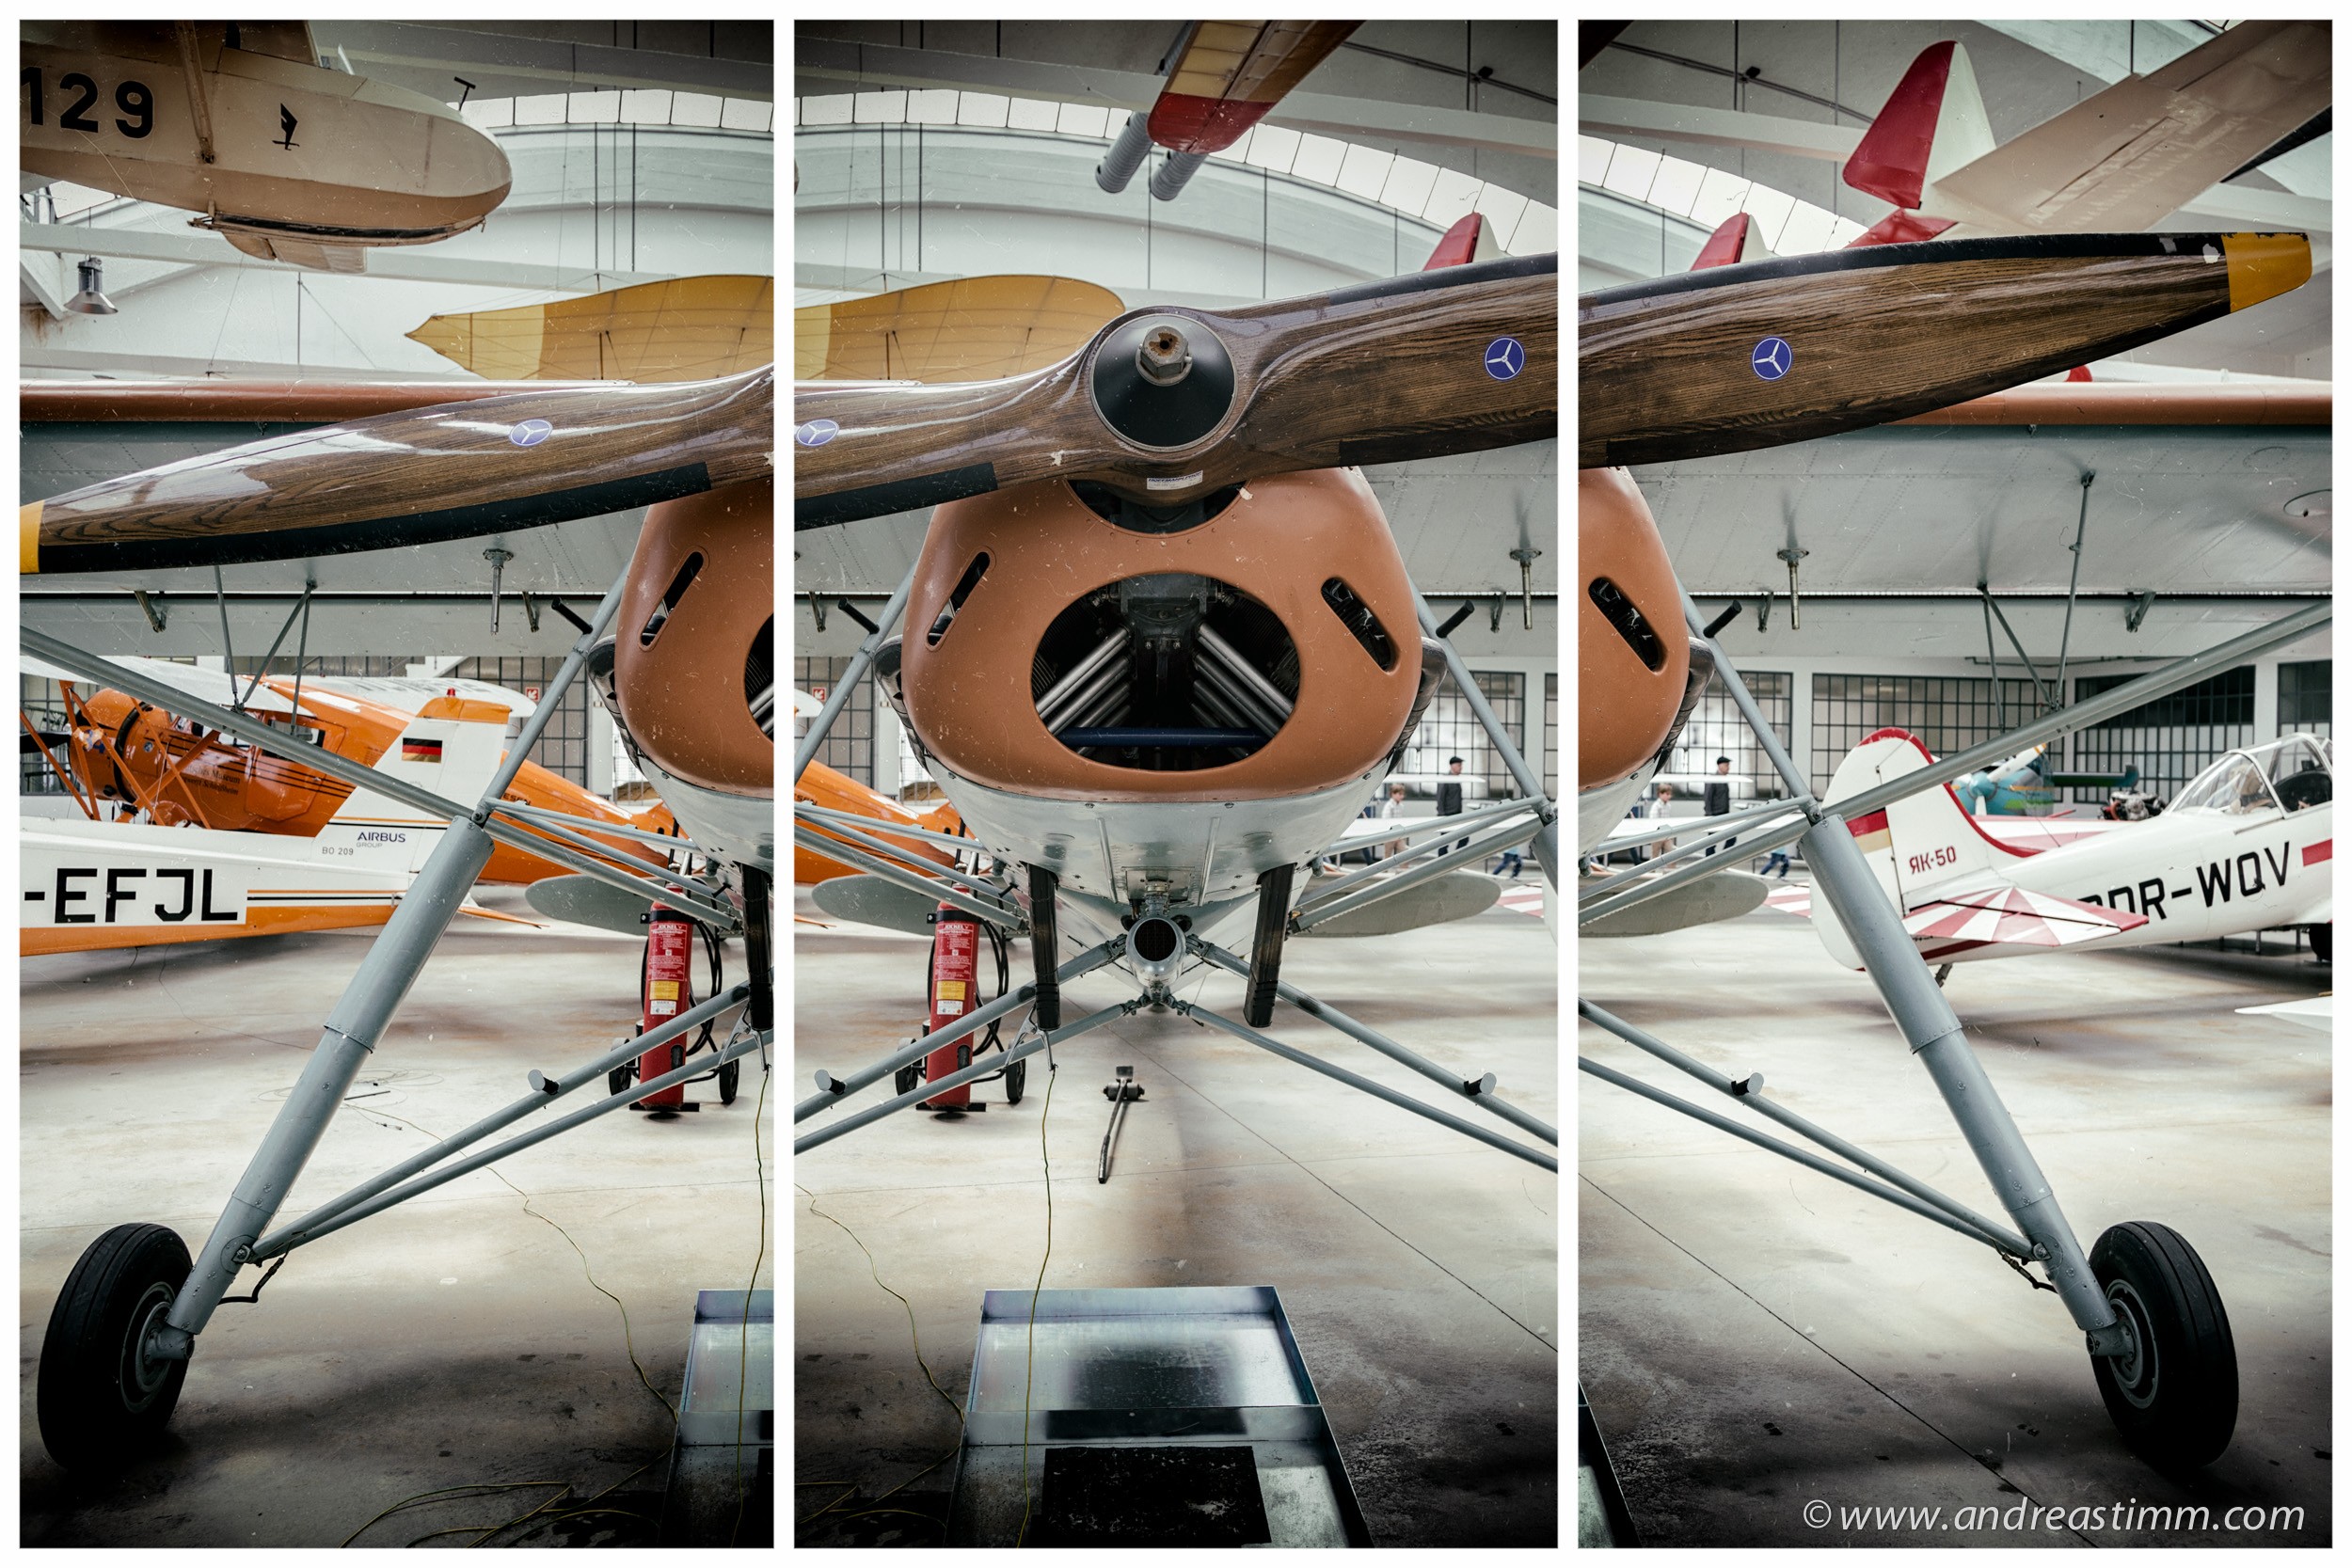 Classic Plane Triptychon